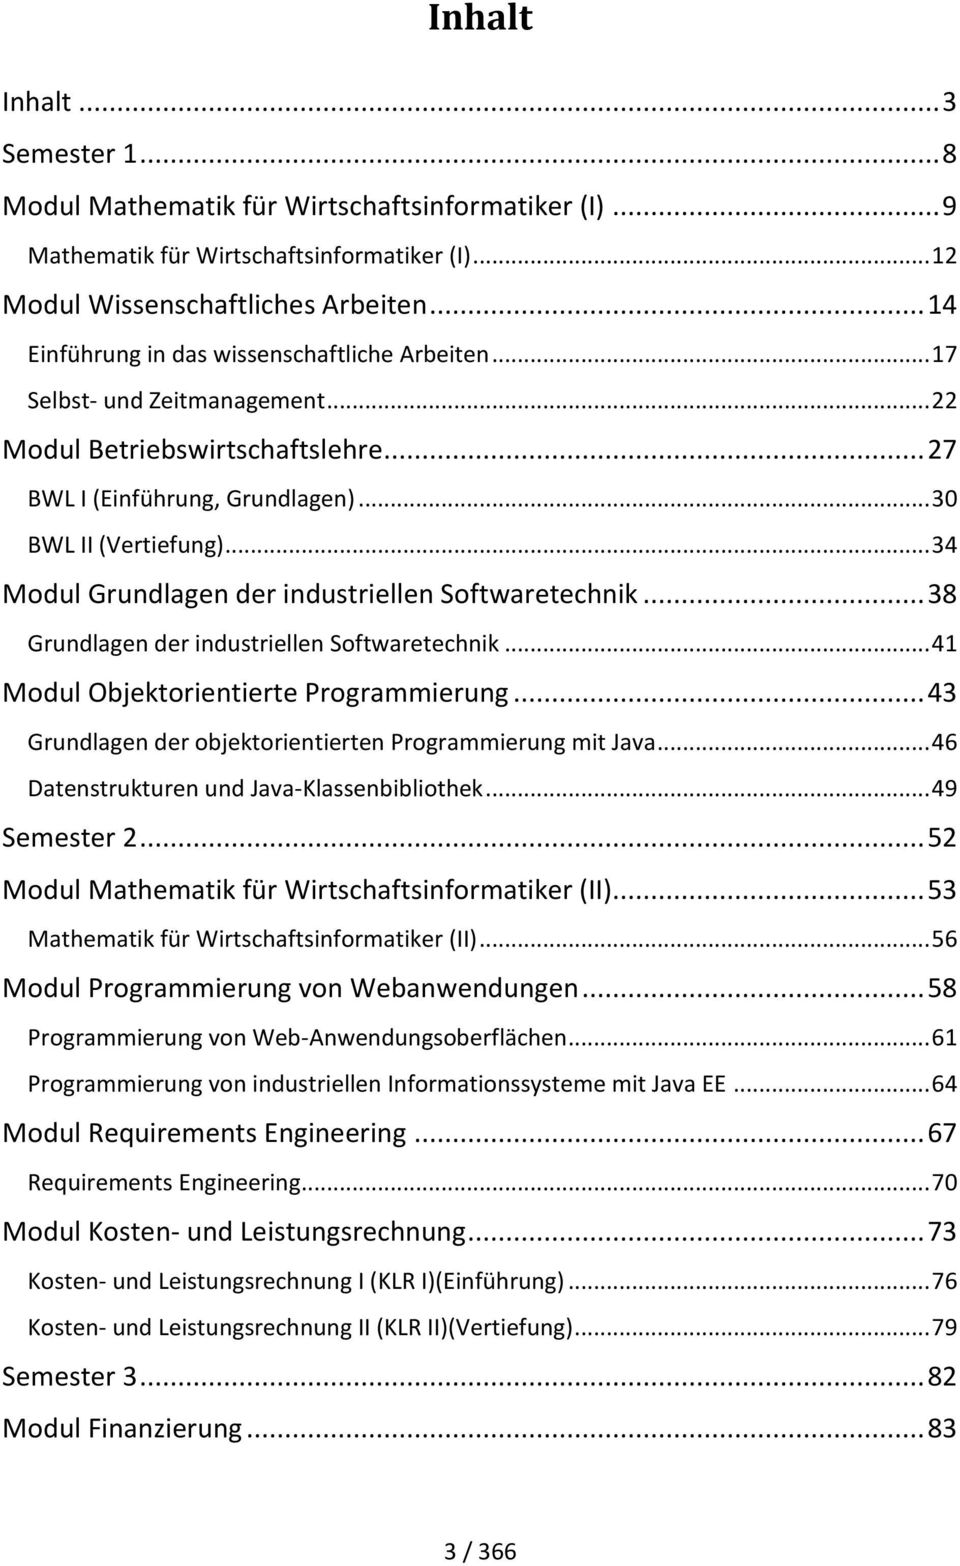 .. 34 Modul Grundlagen der industriellen Softwaretechnik... 38 Grundlagen der industriellen Softwaretechnik... 41 Modul Objektorientierte Programmierung.